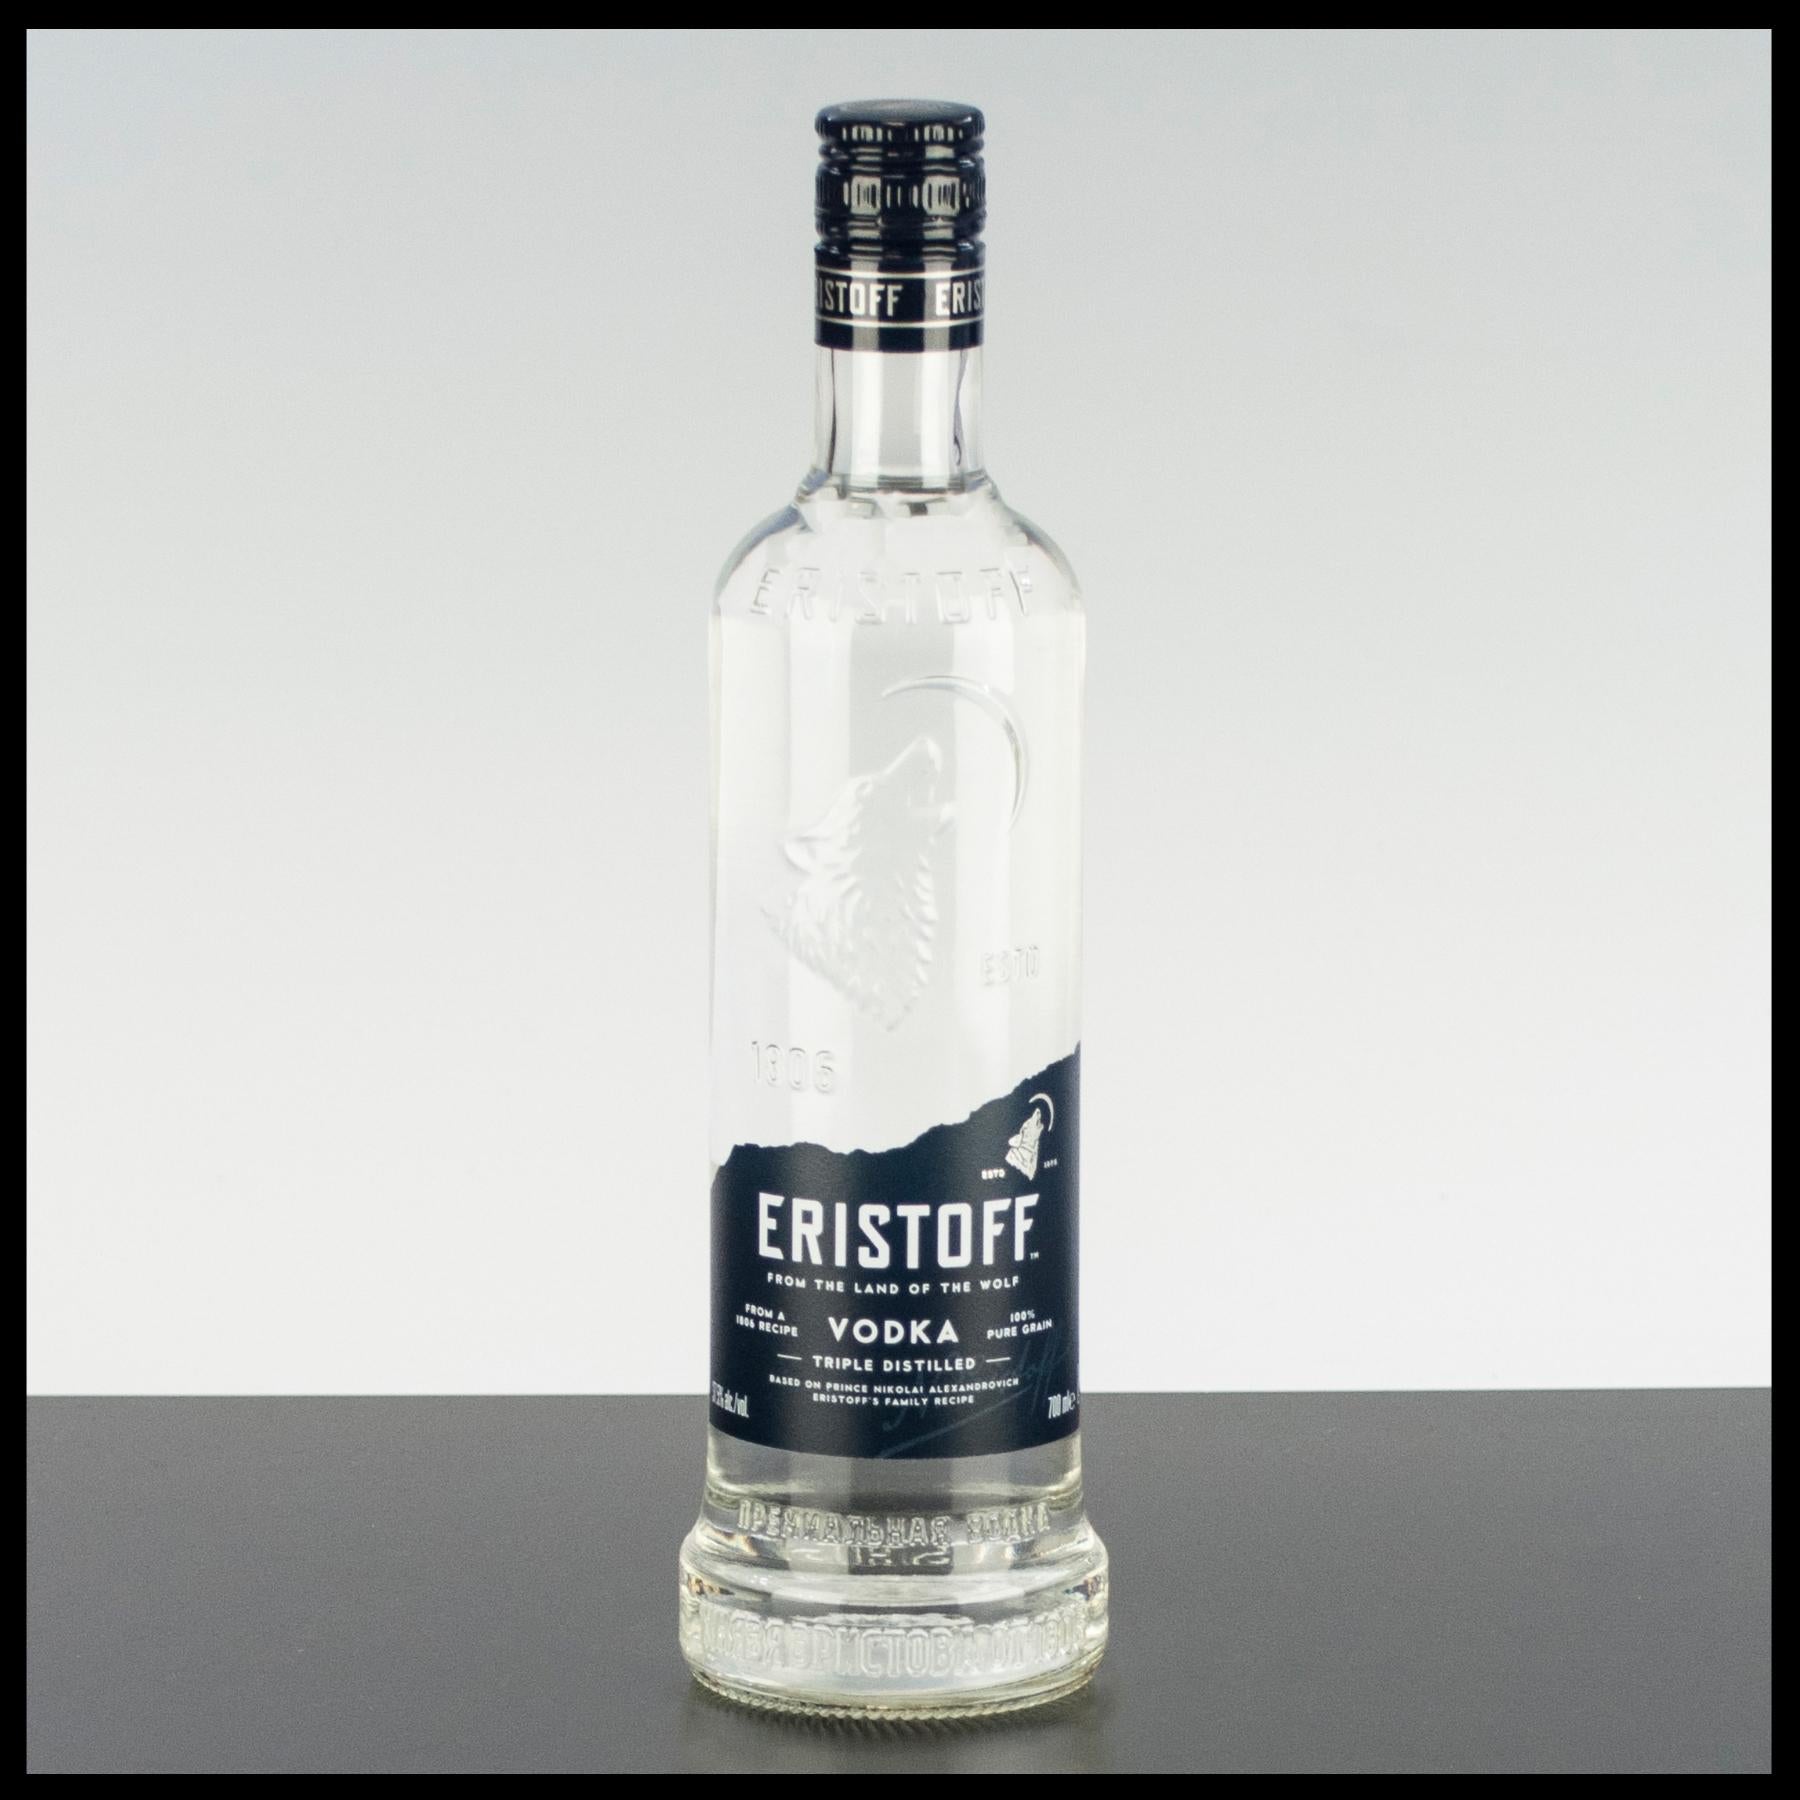 Eristoff Premium Vodka 0,7L - 37,5% Vol. - Trinklusiv